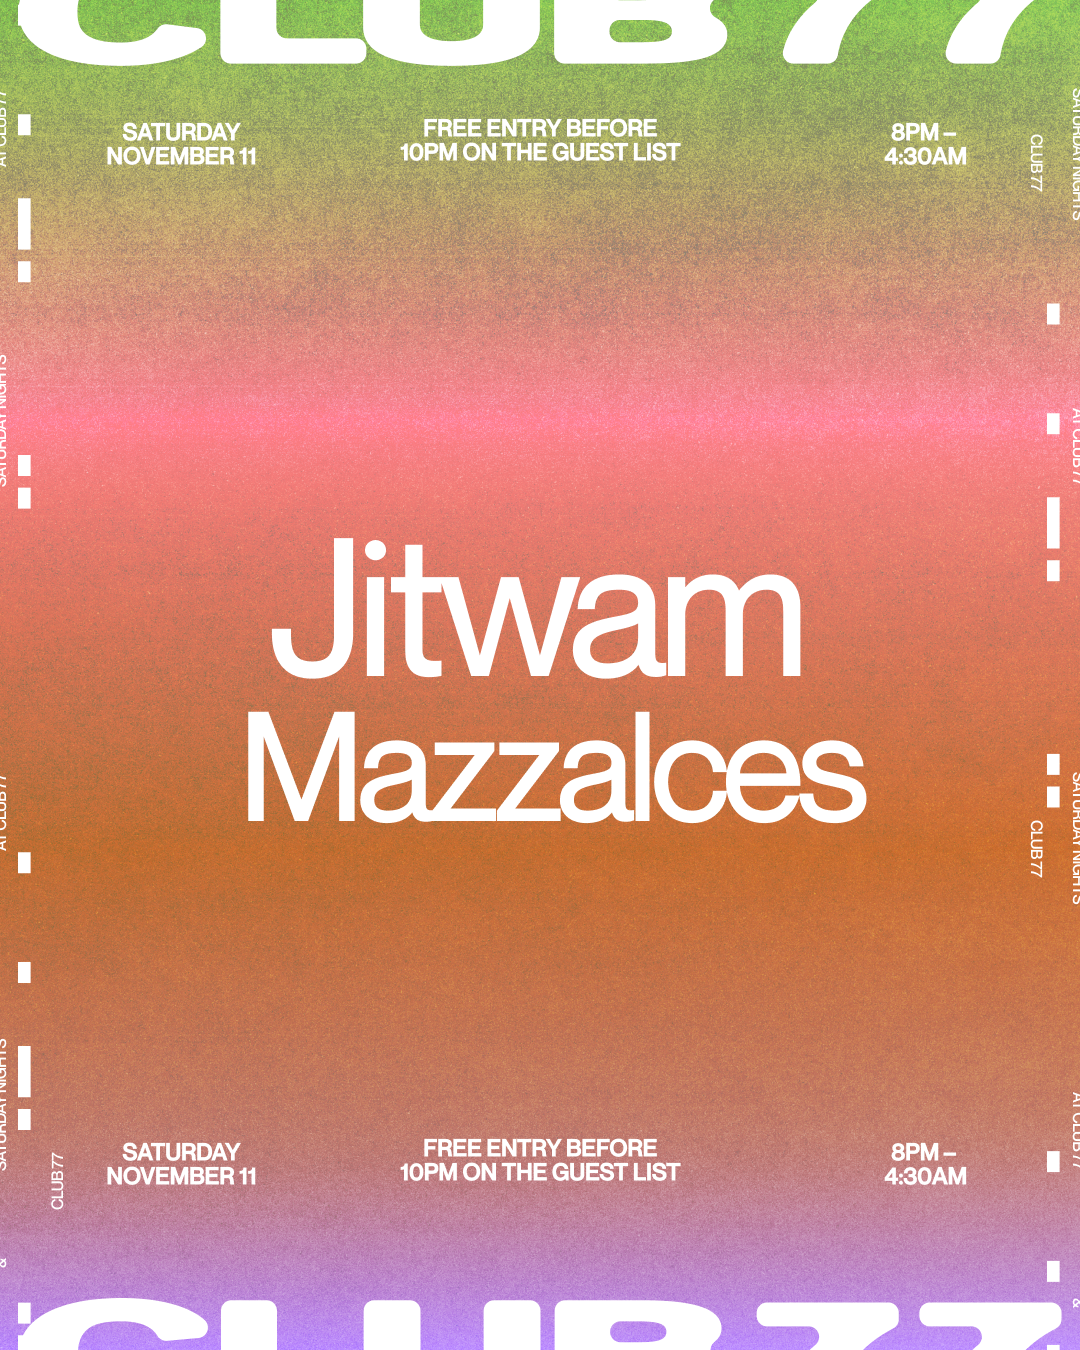 Club 77 w/ Jitwam and Mazzacles - Página frontal